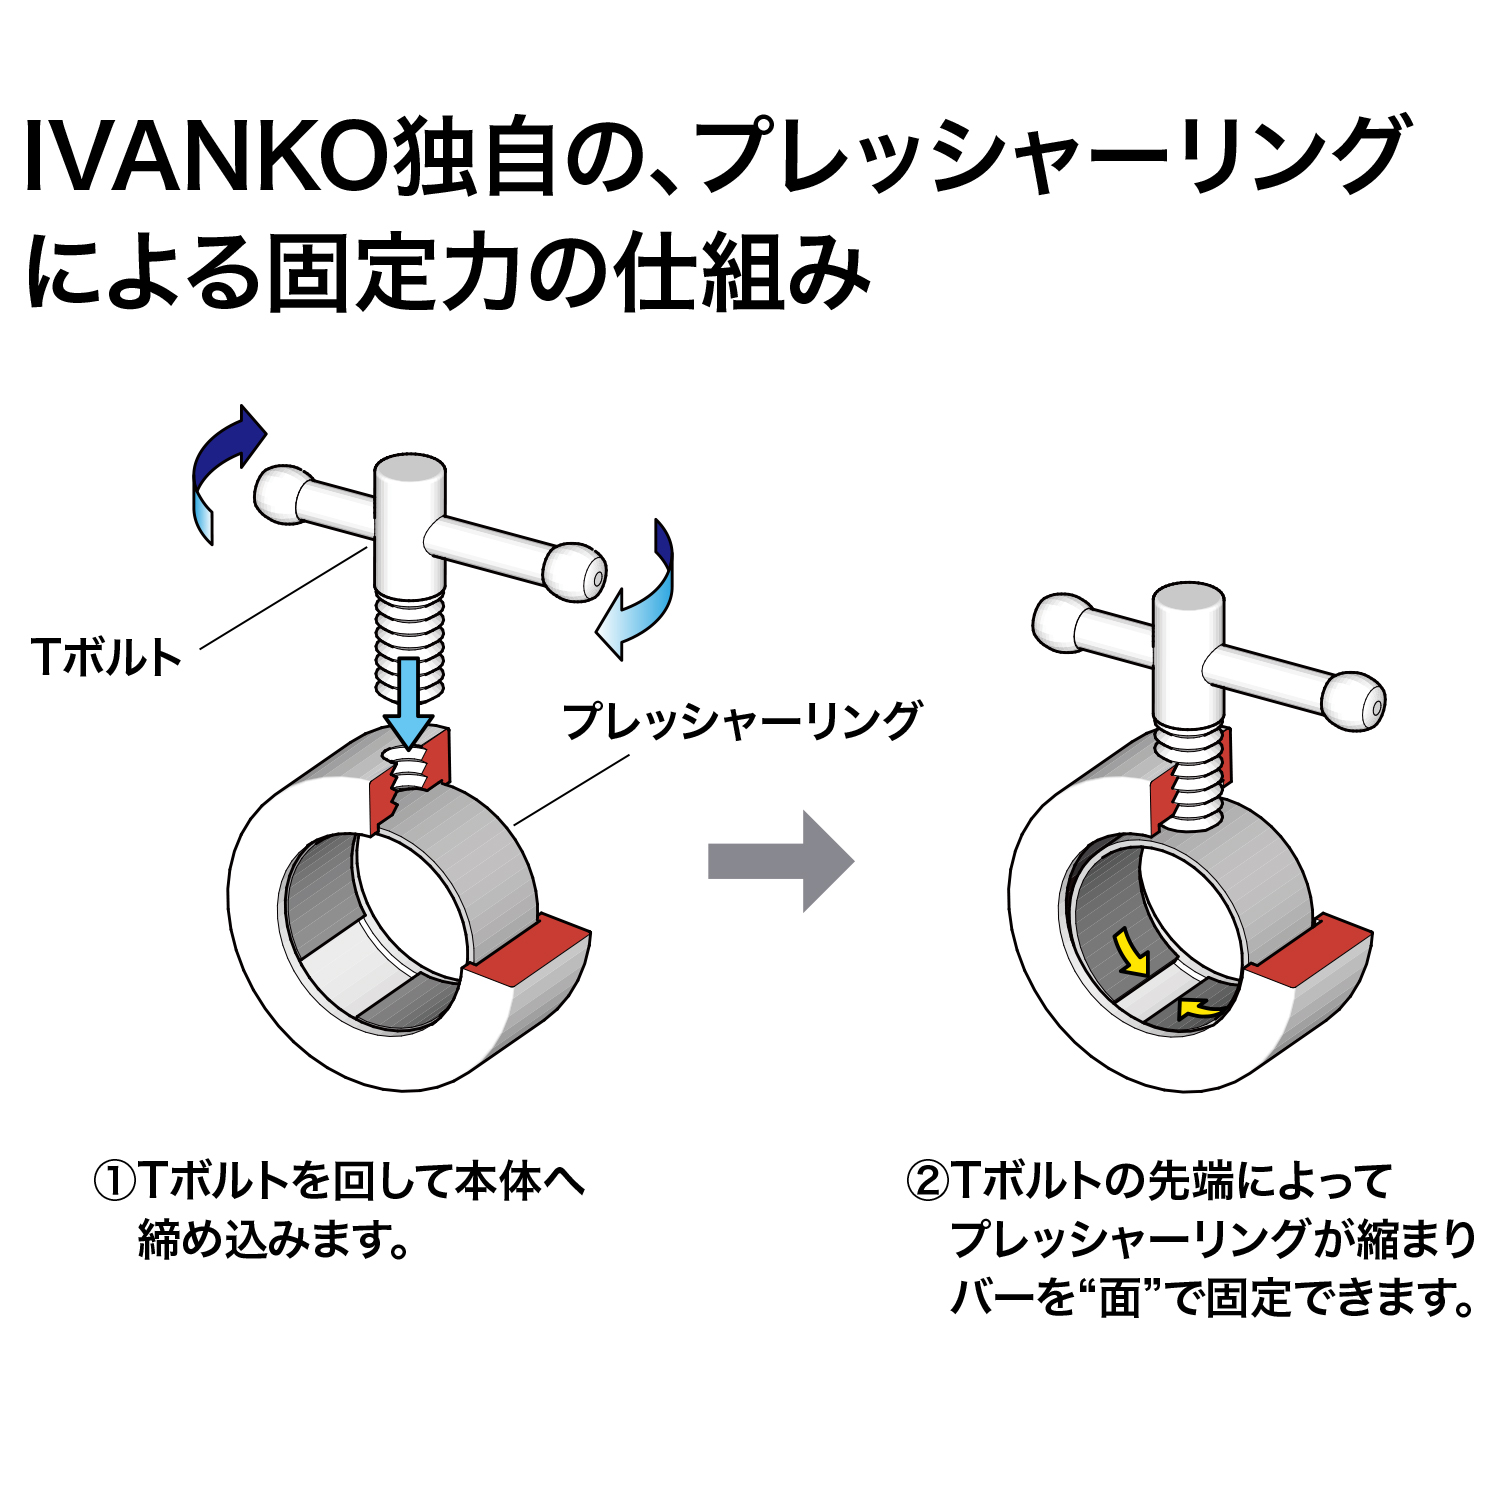 IVANKO独自の、プレッシャーリングによる固定力の仕組み